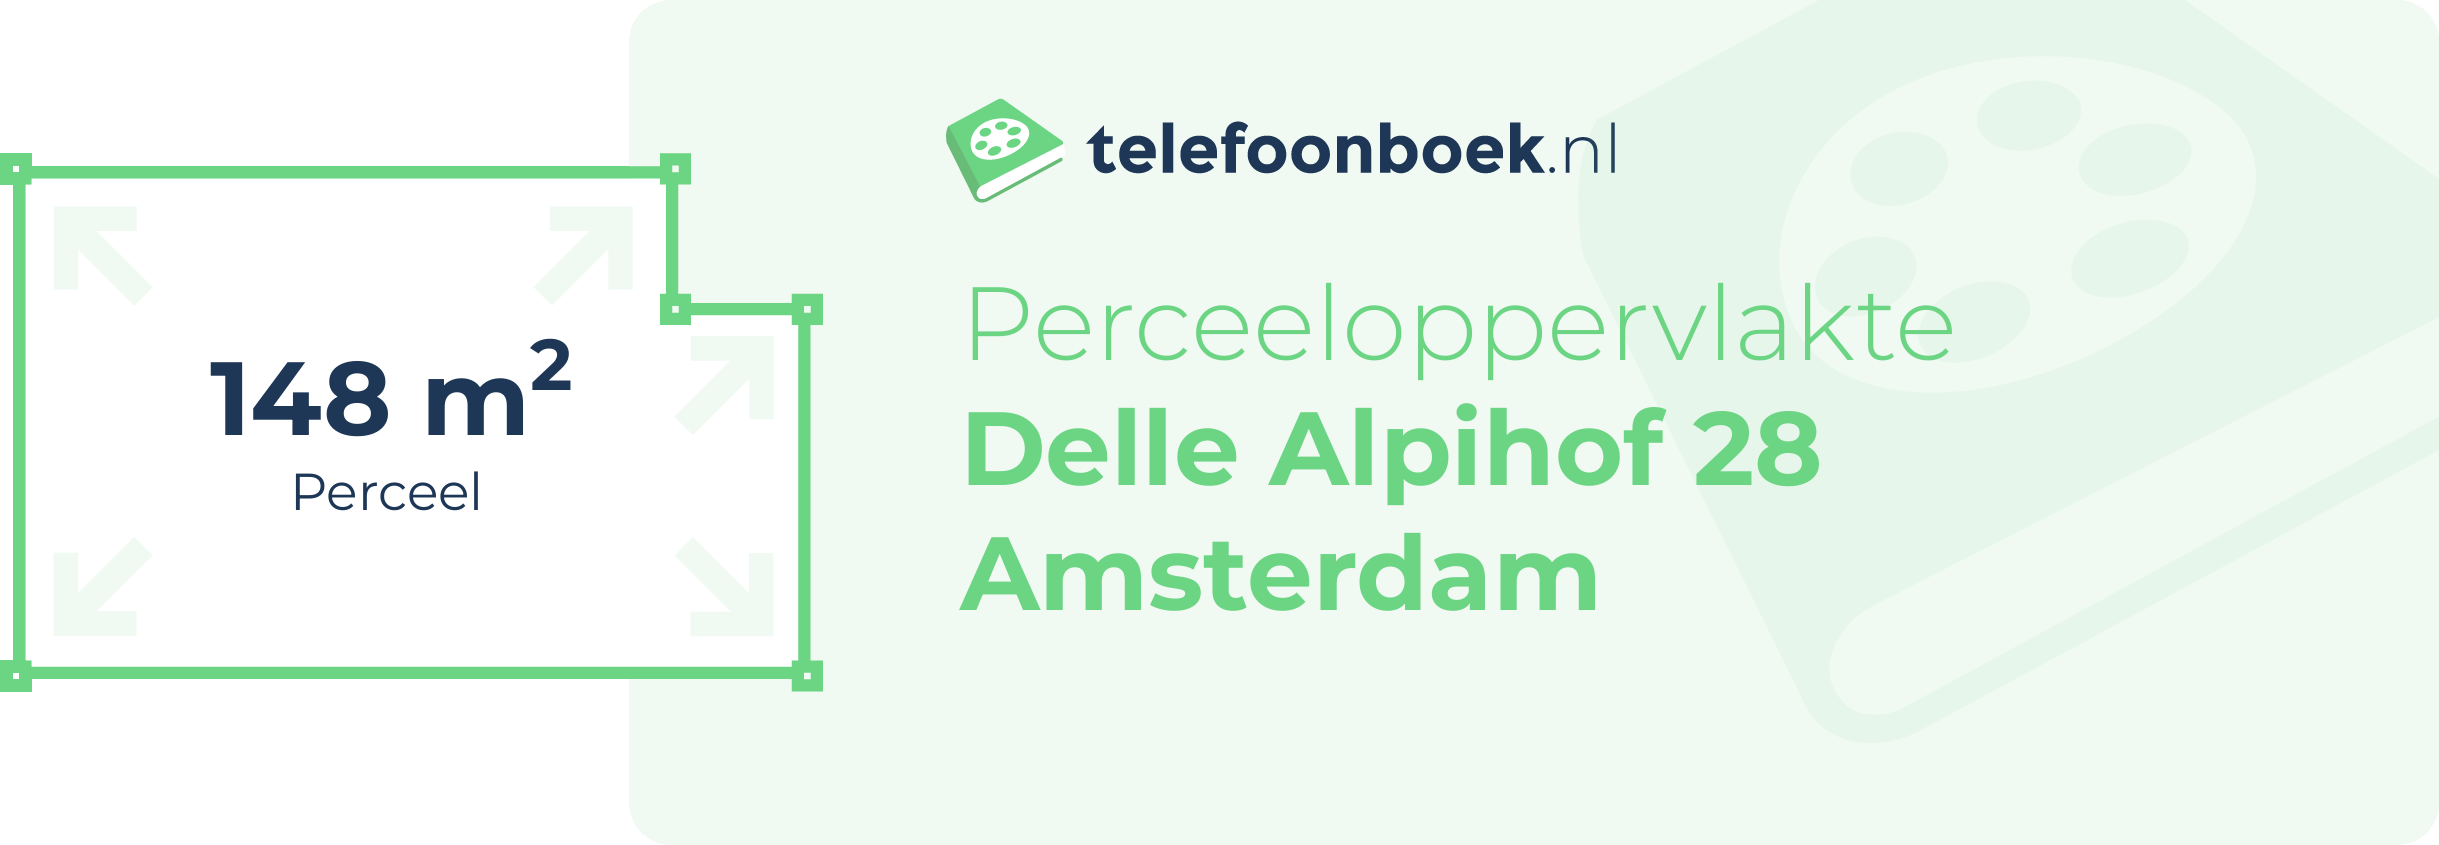 Perceeloppervlakte Delle Alpihof 28 Amsterdam